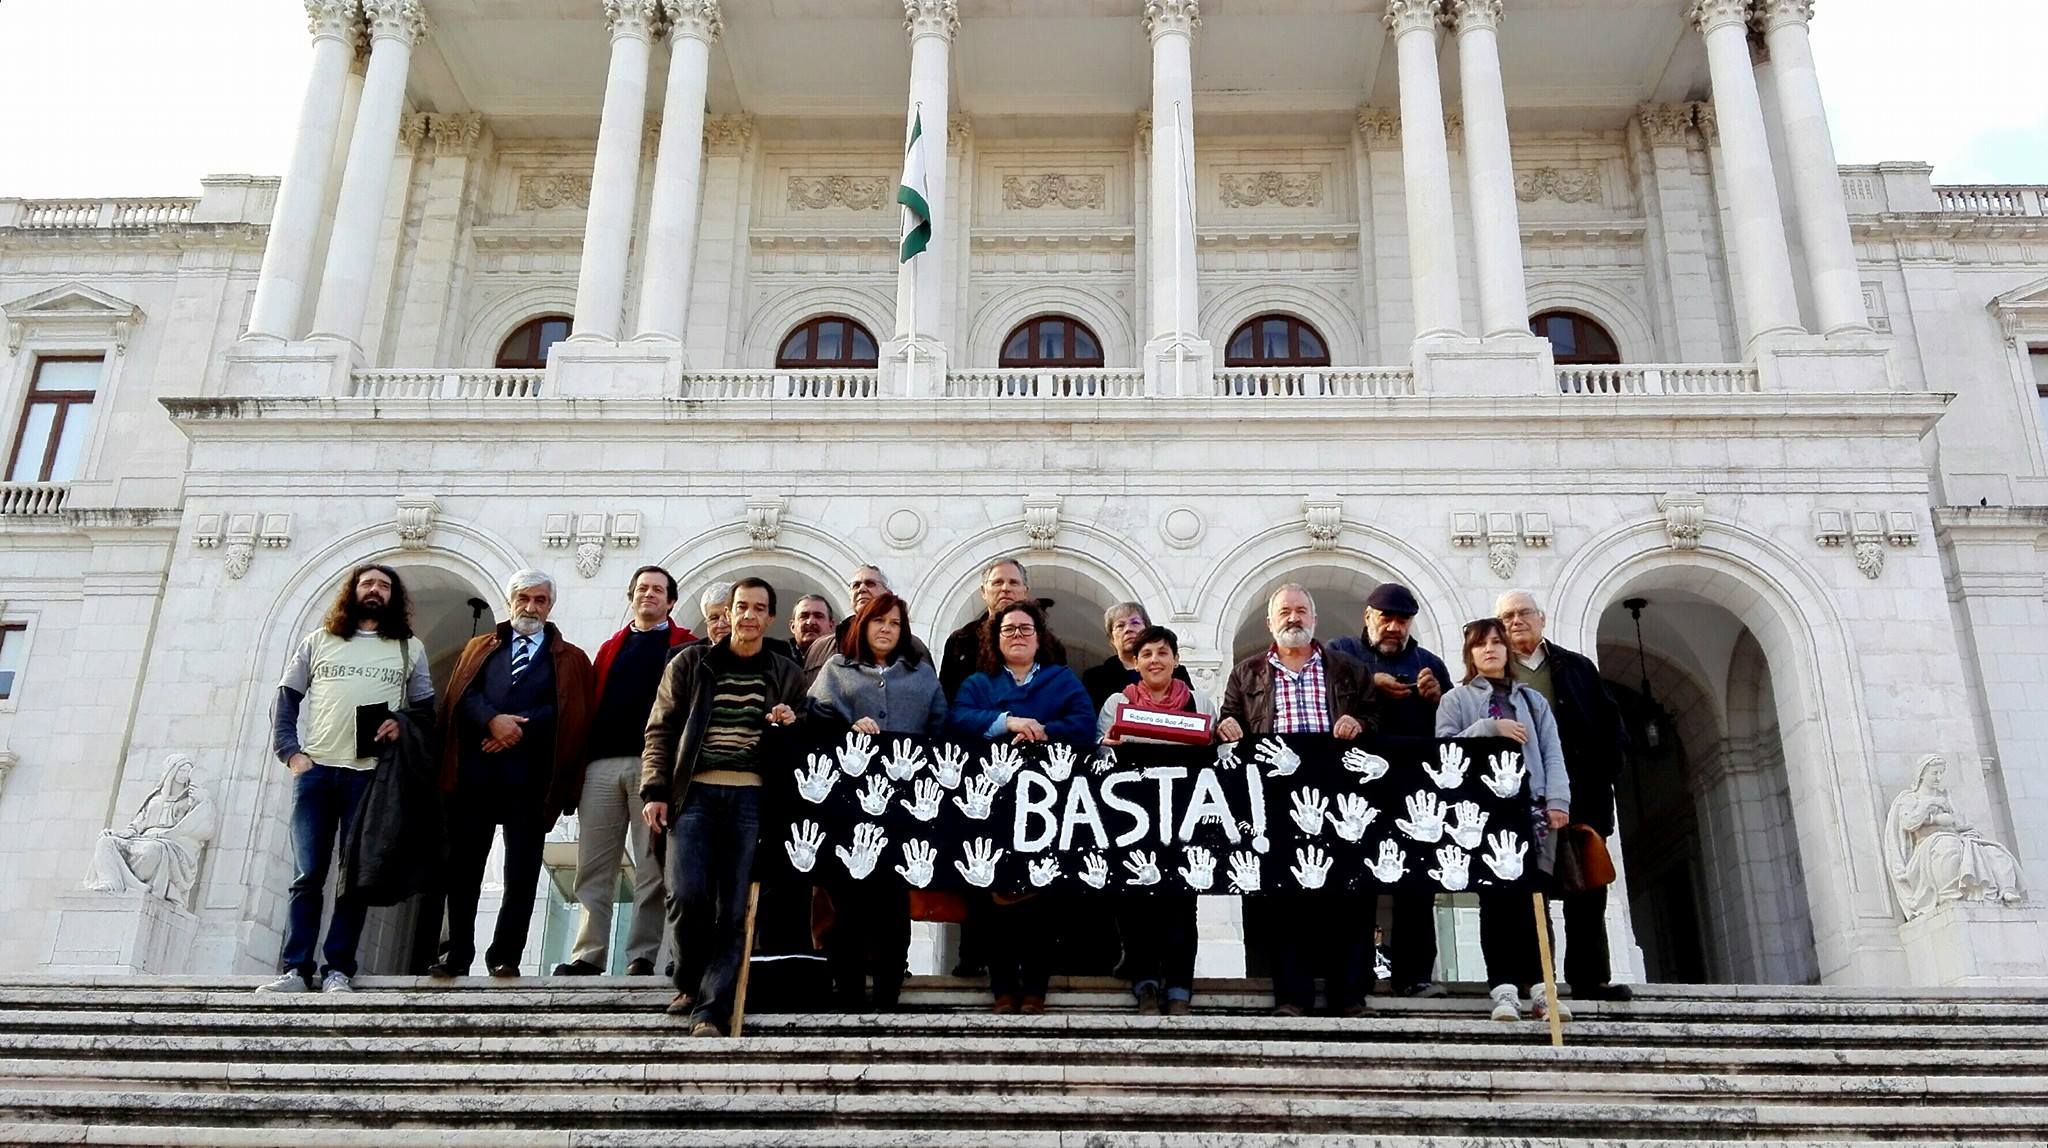 Representantes do movimento "Basta" aquando da entrega da petição na Assembleia da República.